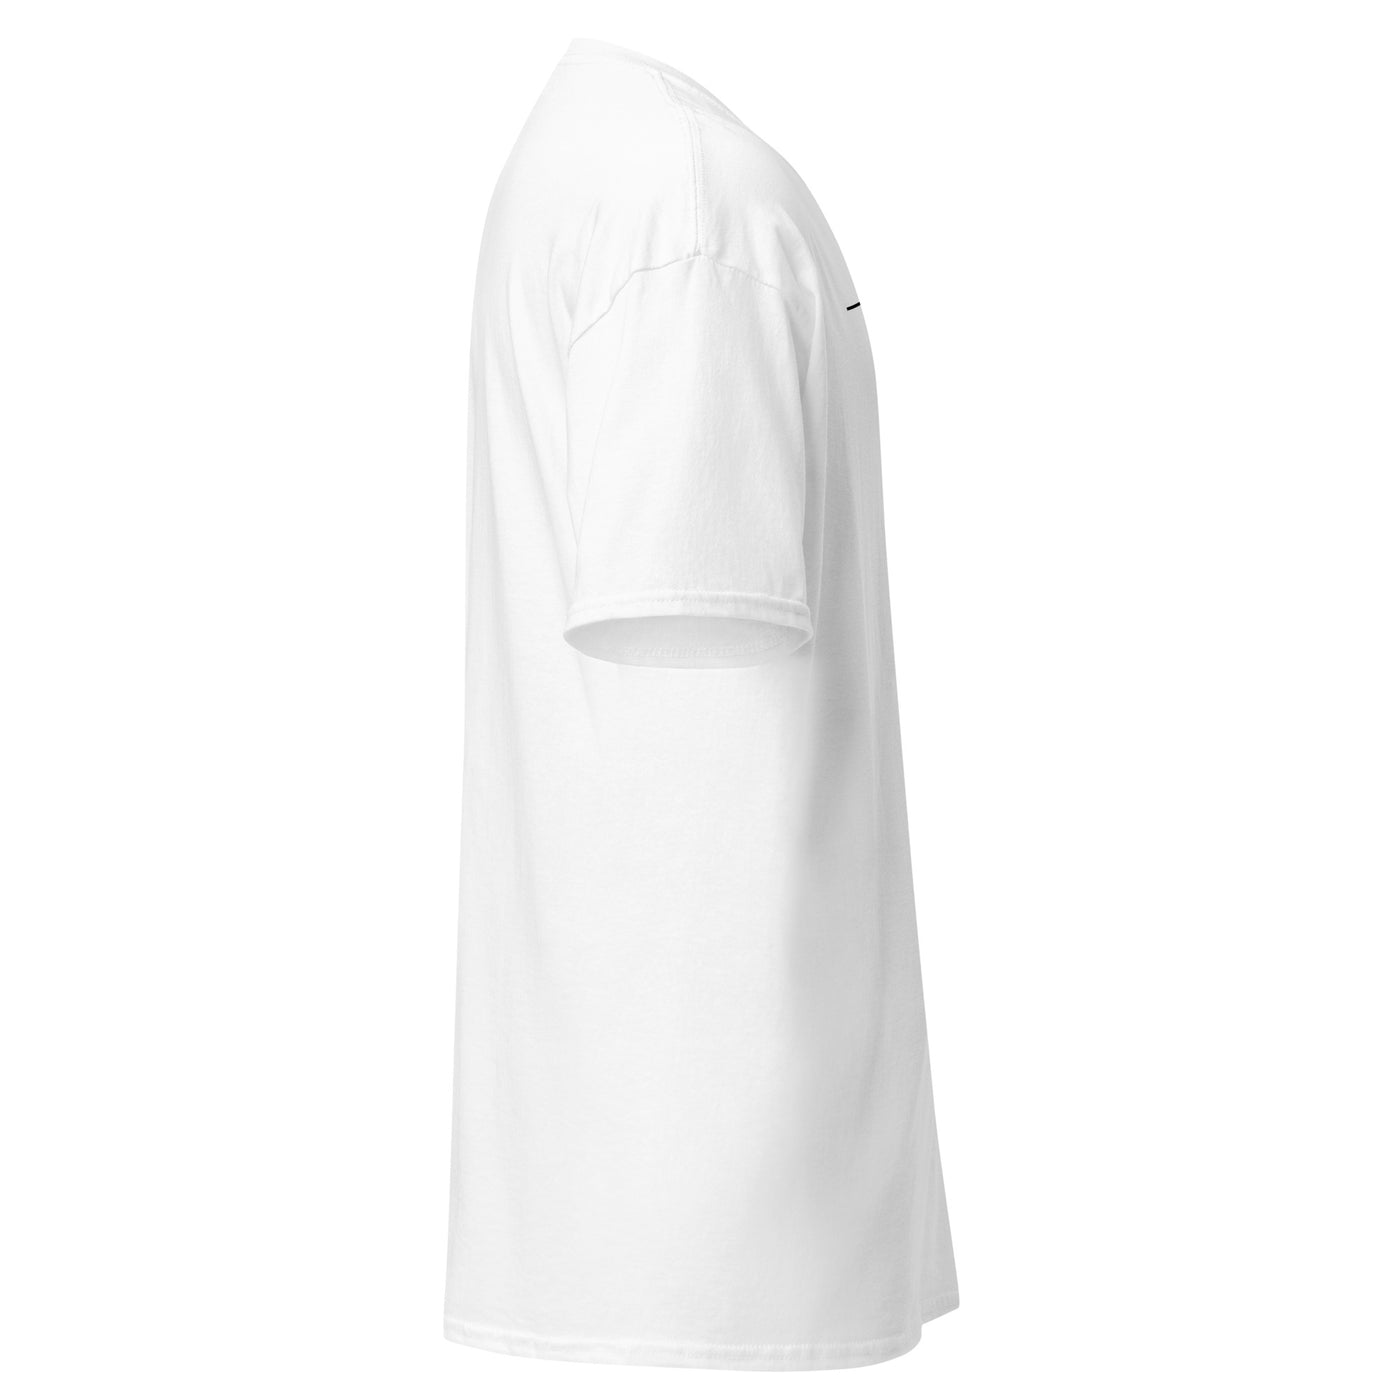 OYWO 'the 30 &gt; life' White Unisex T-Shirt